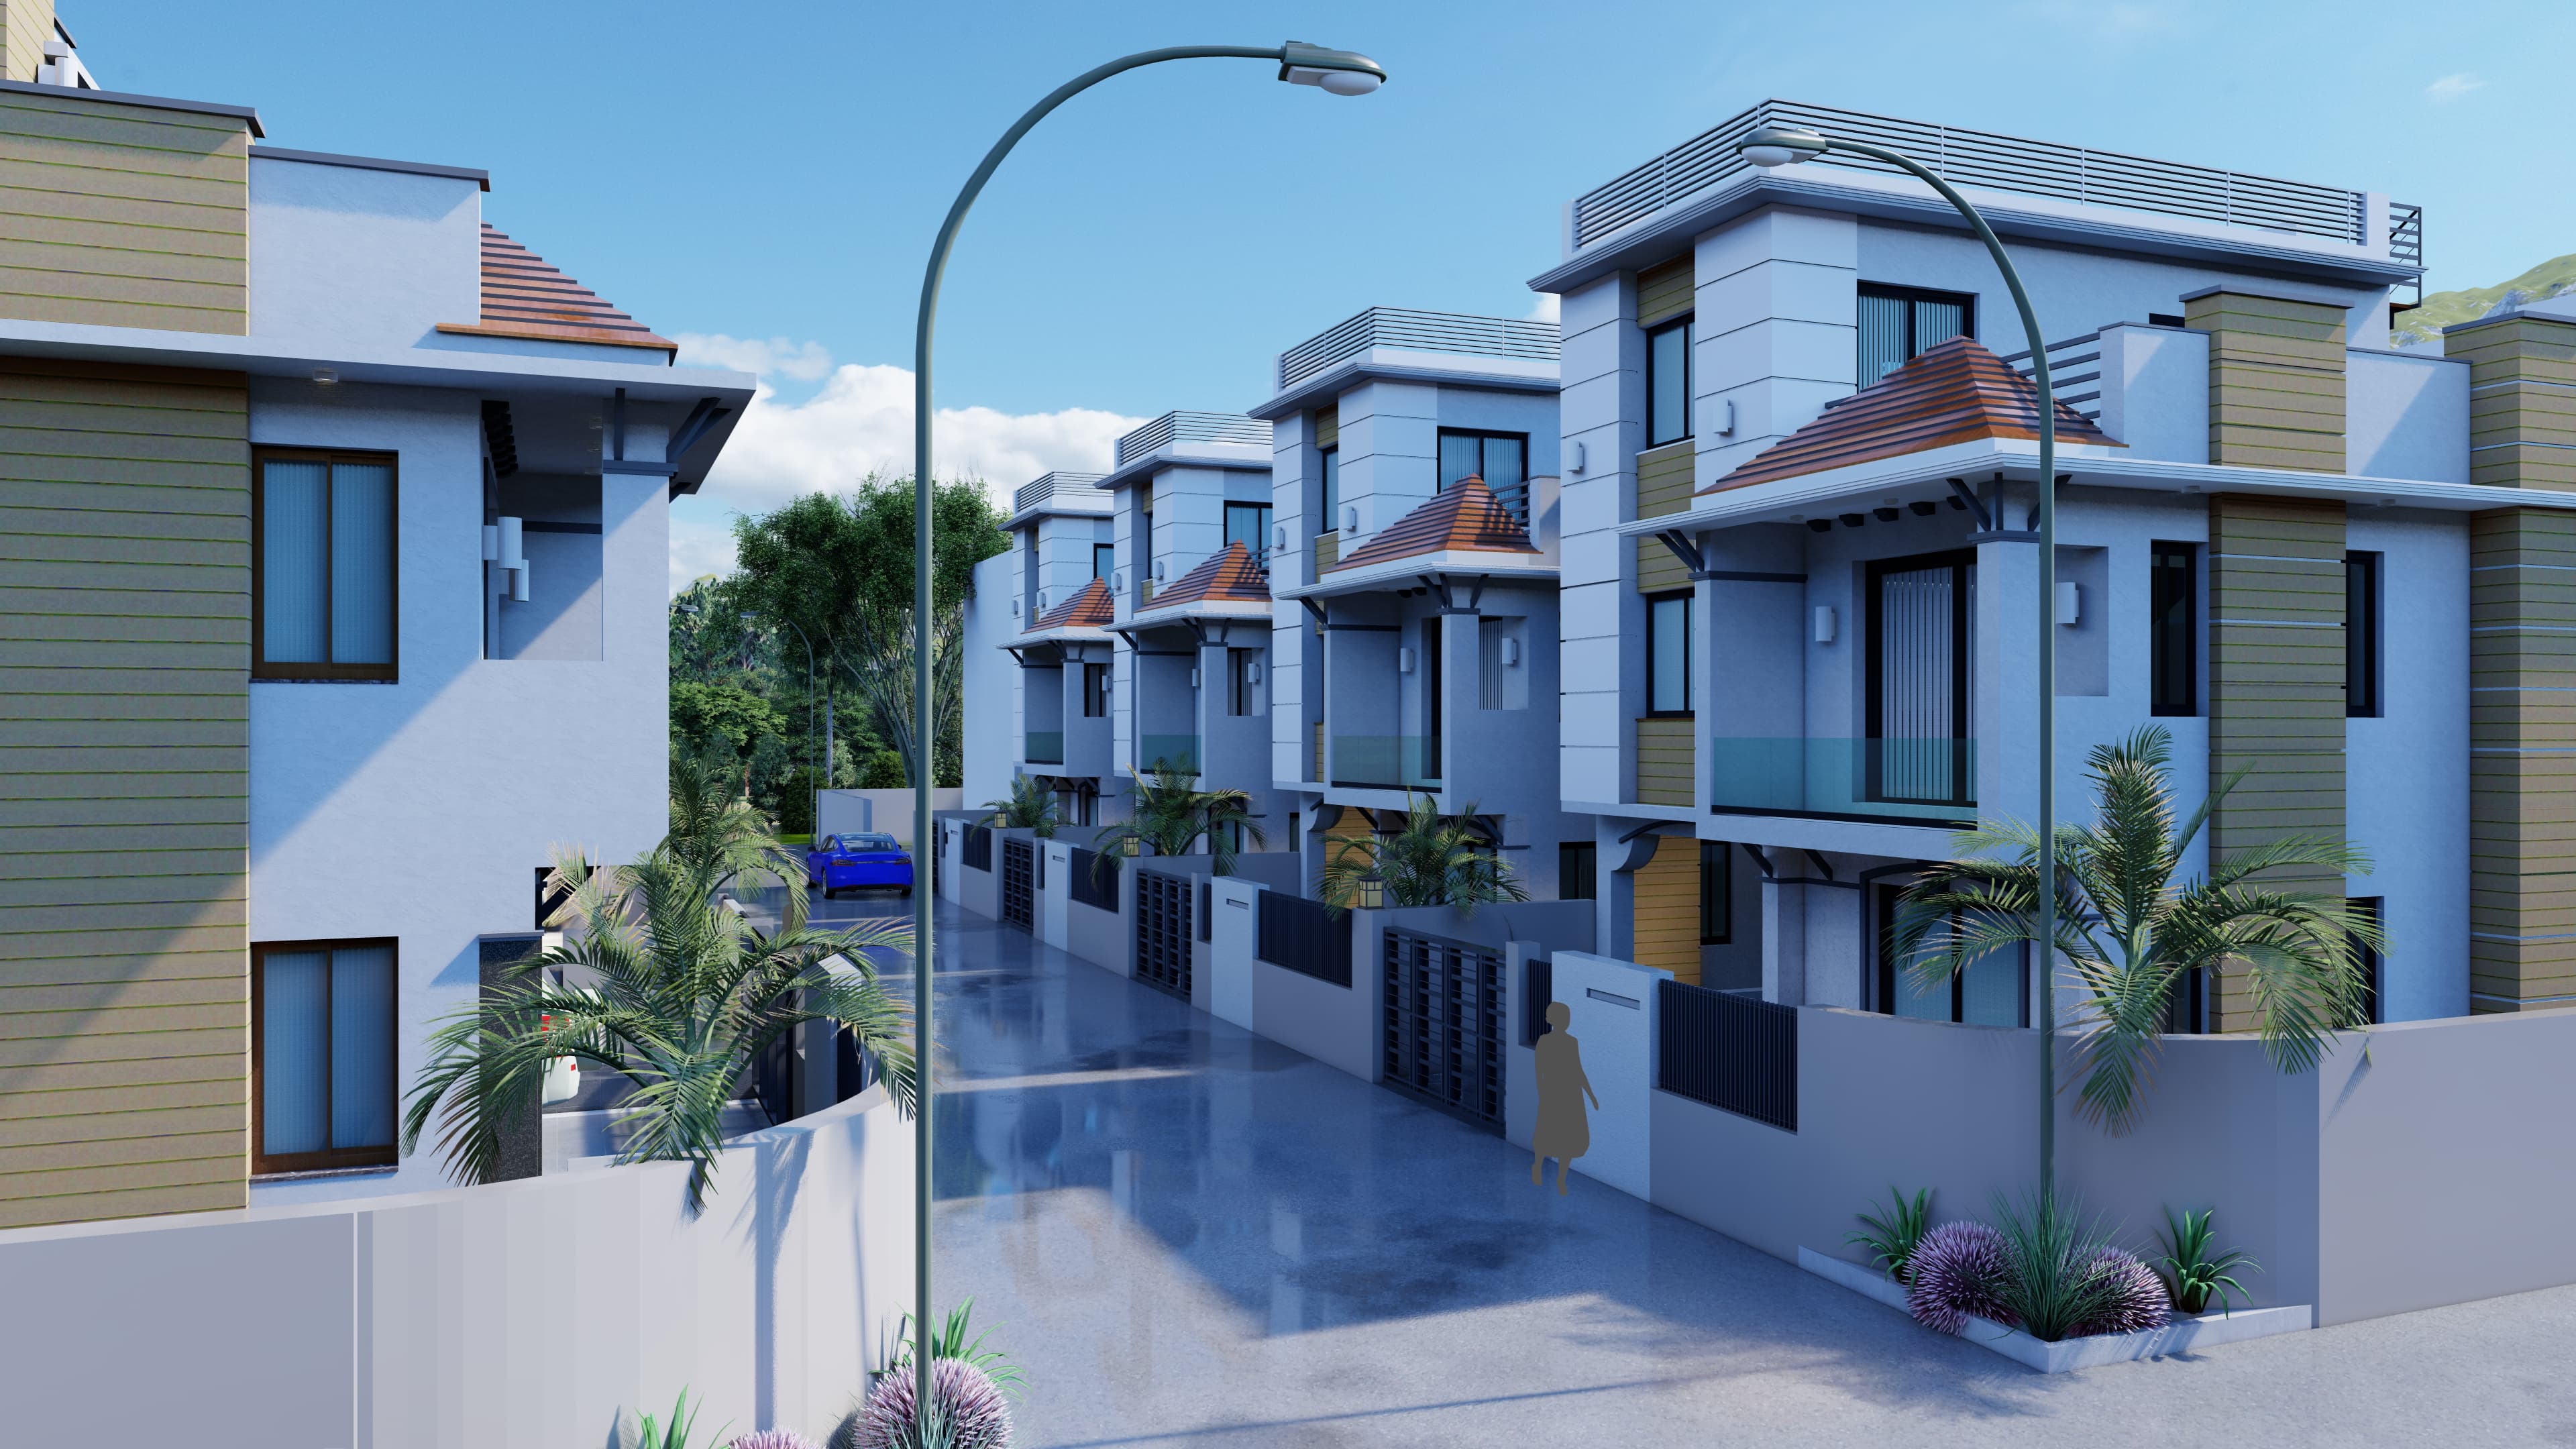 Premium Houses at CG Villas, Sunakothi